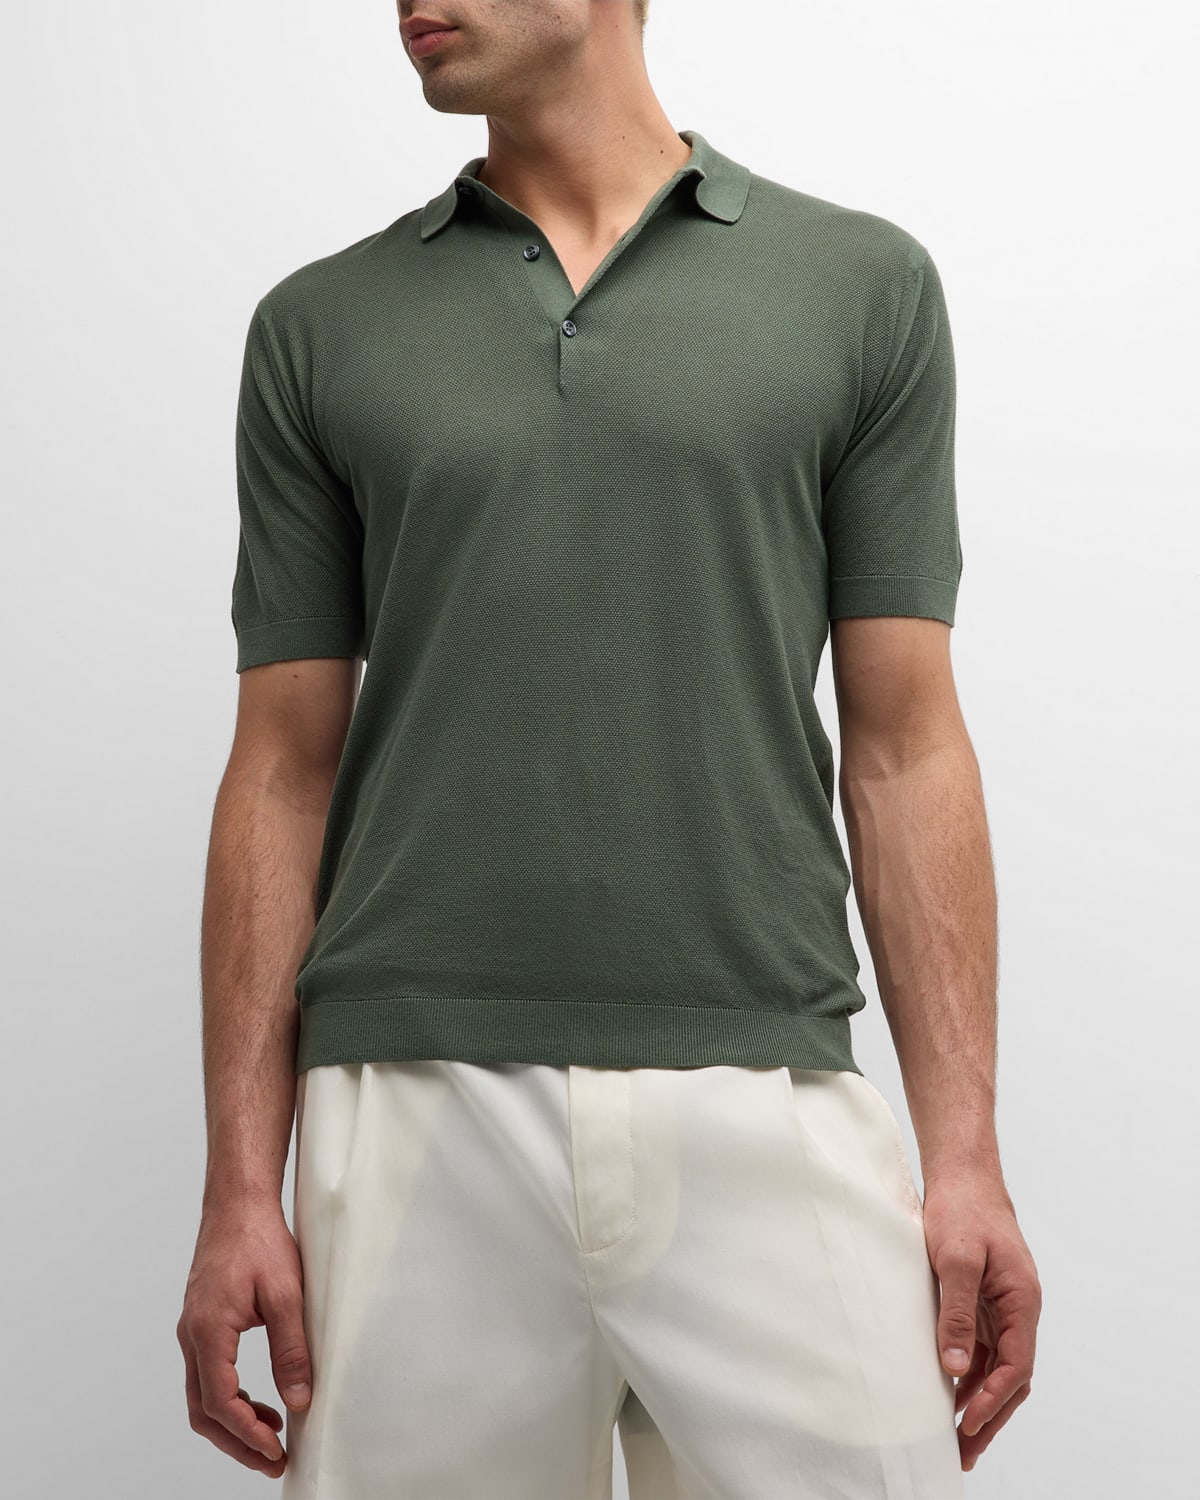 John Smedley Men's Roth Cotton Polo Shirt In Almond